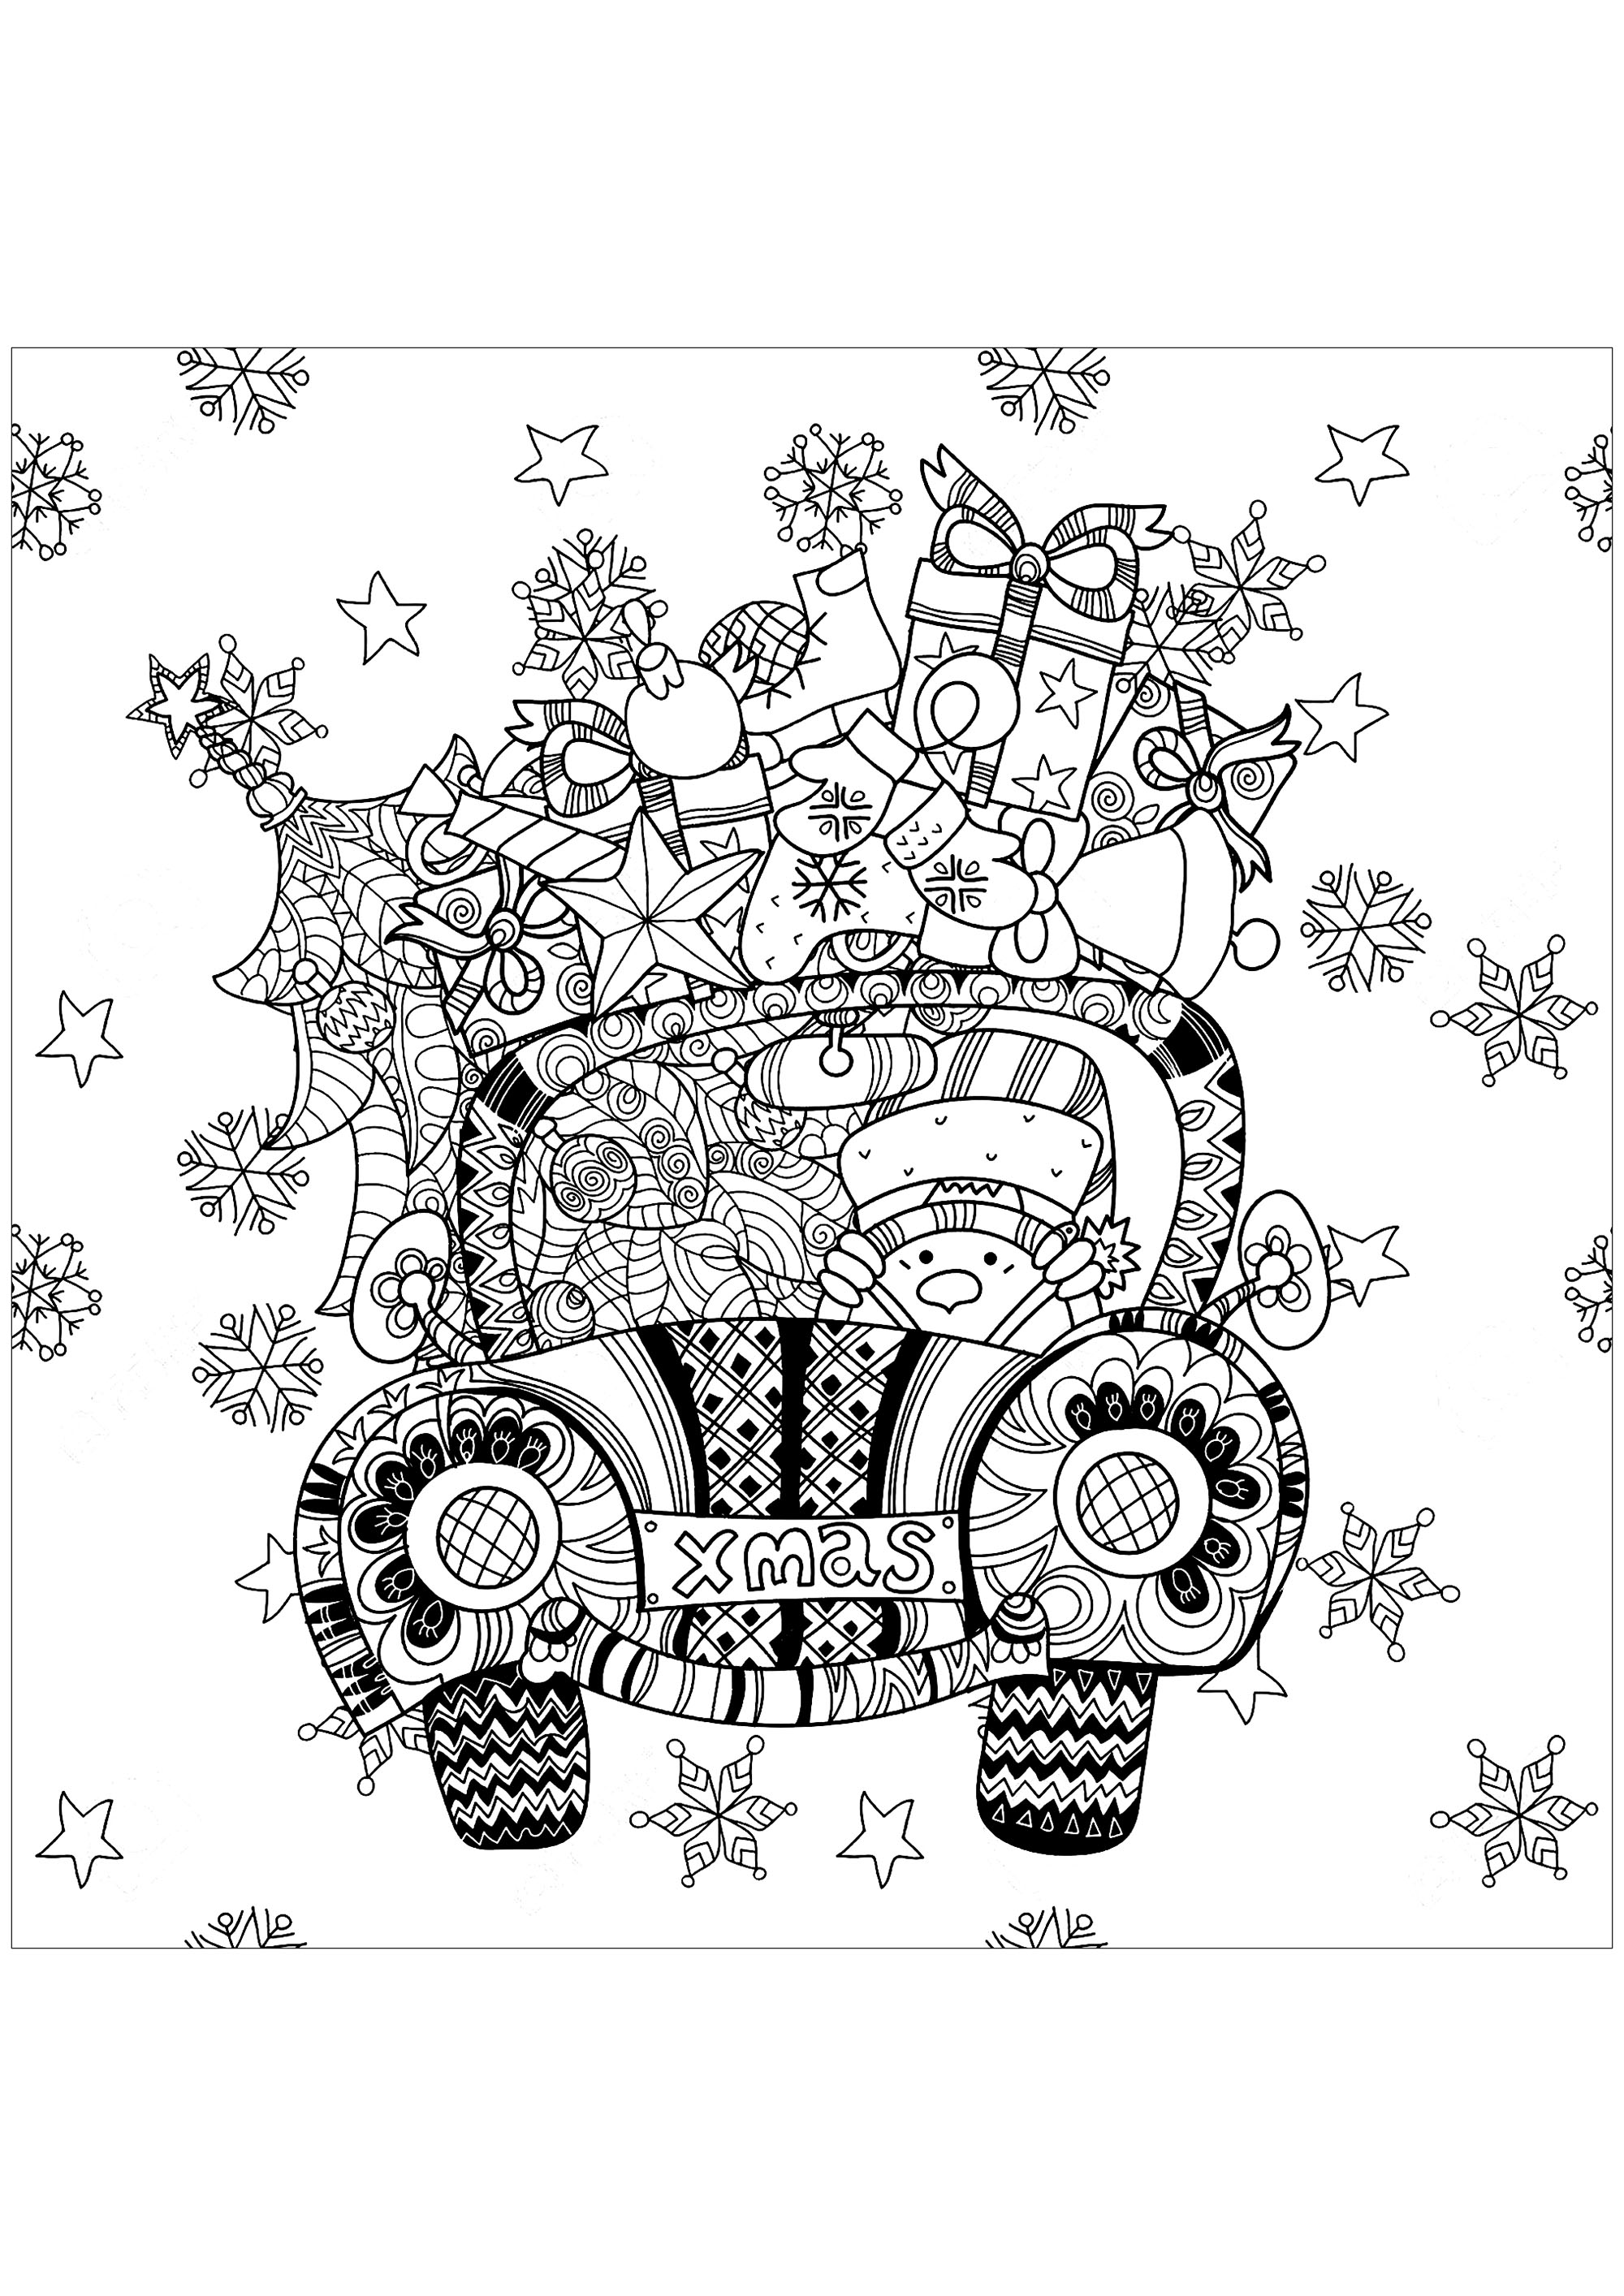 Bringen Sie Farbe in die Geschenke, die dieses kleine, von einem Schneemann gesteuerte Auto füllen. Diese Ausmalvorlage ist der perfekte Weg, um in Weihnachtsstimmung zu kommen. Sie ist lustig und inspirierend, und du kannst sie nach Lust und Laune gestalten.Also schnapp dir deine Buntstifte und hab Spaß!, Künstler : Ирина Язева   Quelle : 123rf